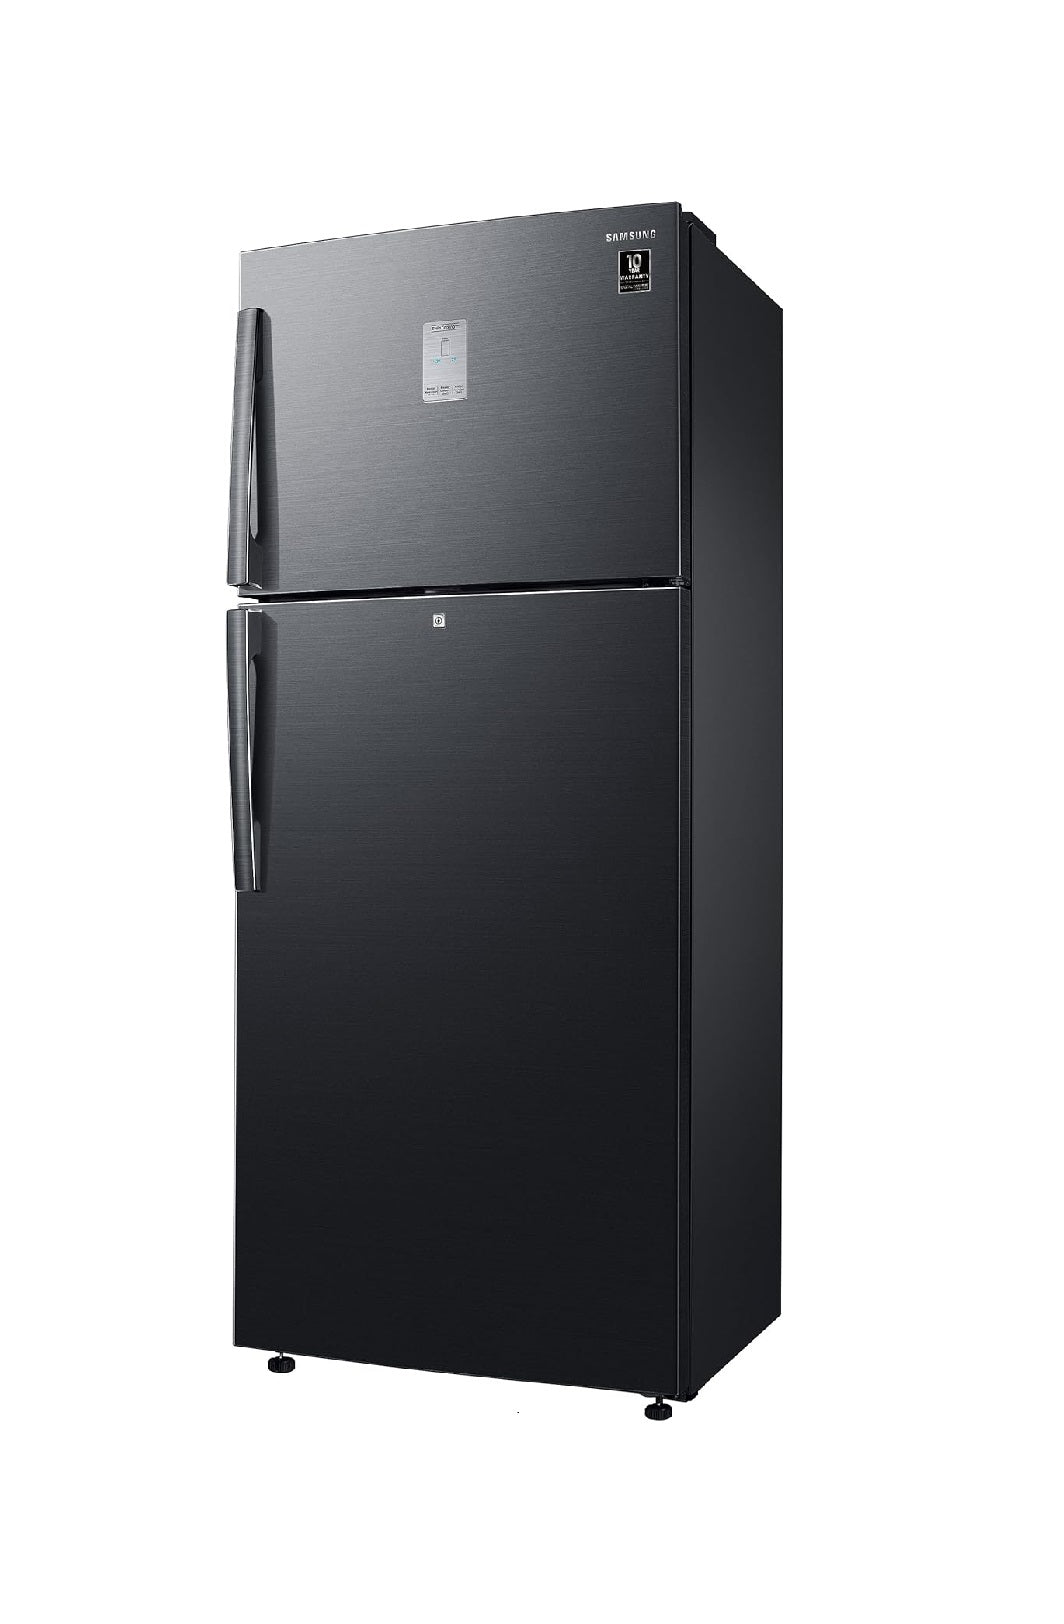 Samsung RT56C637SBS/TL 530L, Digital Inverter, Frost Free Double Door Refrigerator (Black Inox))